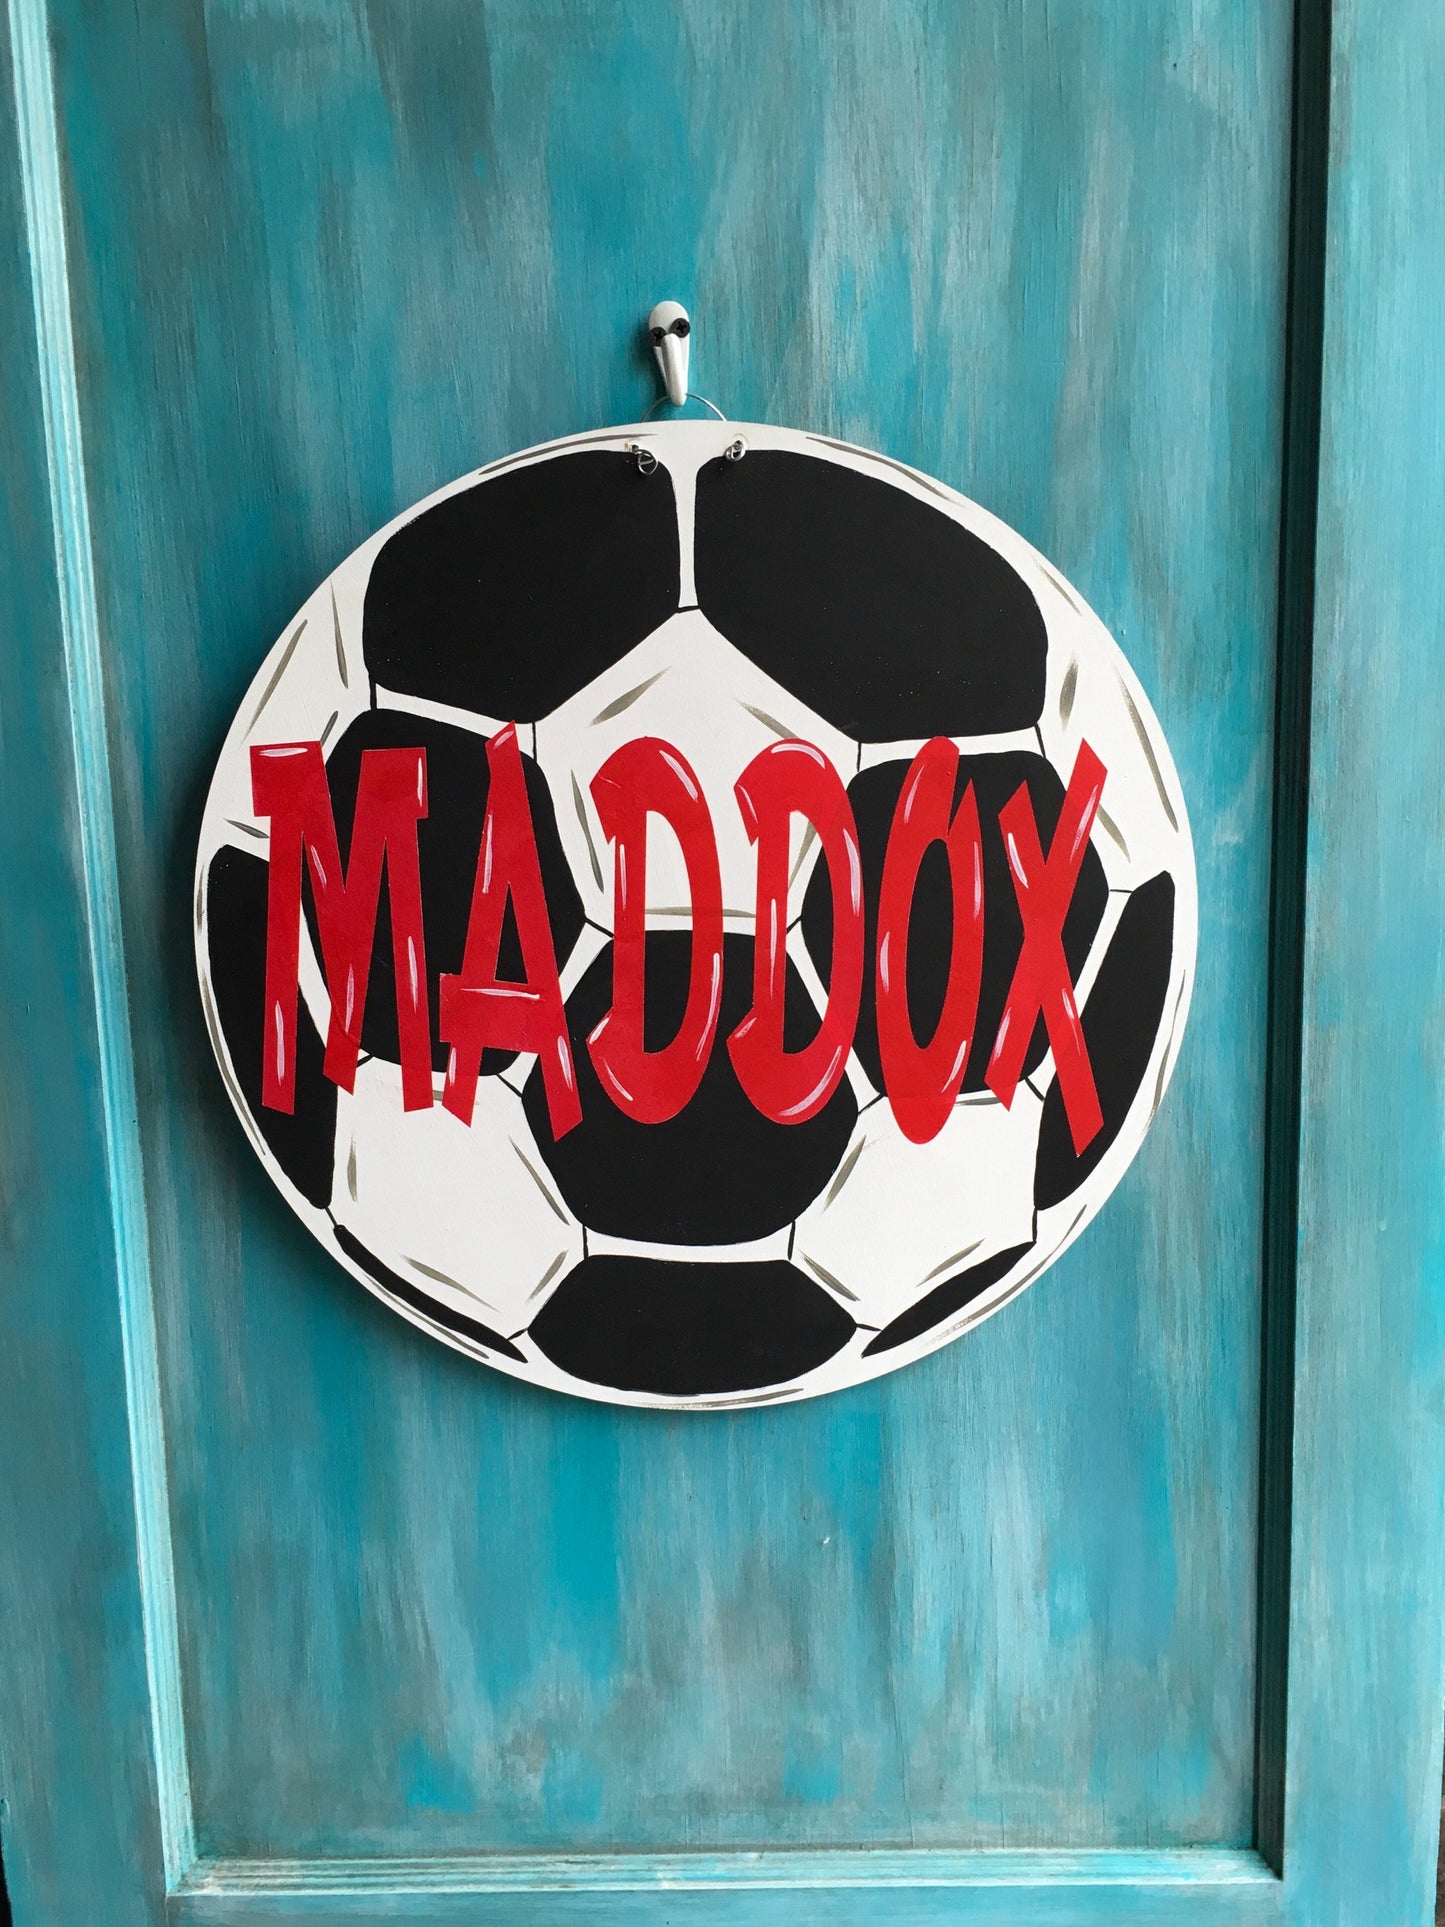 Soccer ballDoor hanger, wood door hanger, sport door hanger, soccer, soccer decor, soccer ball